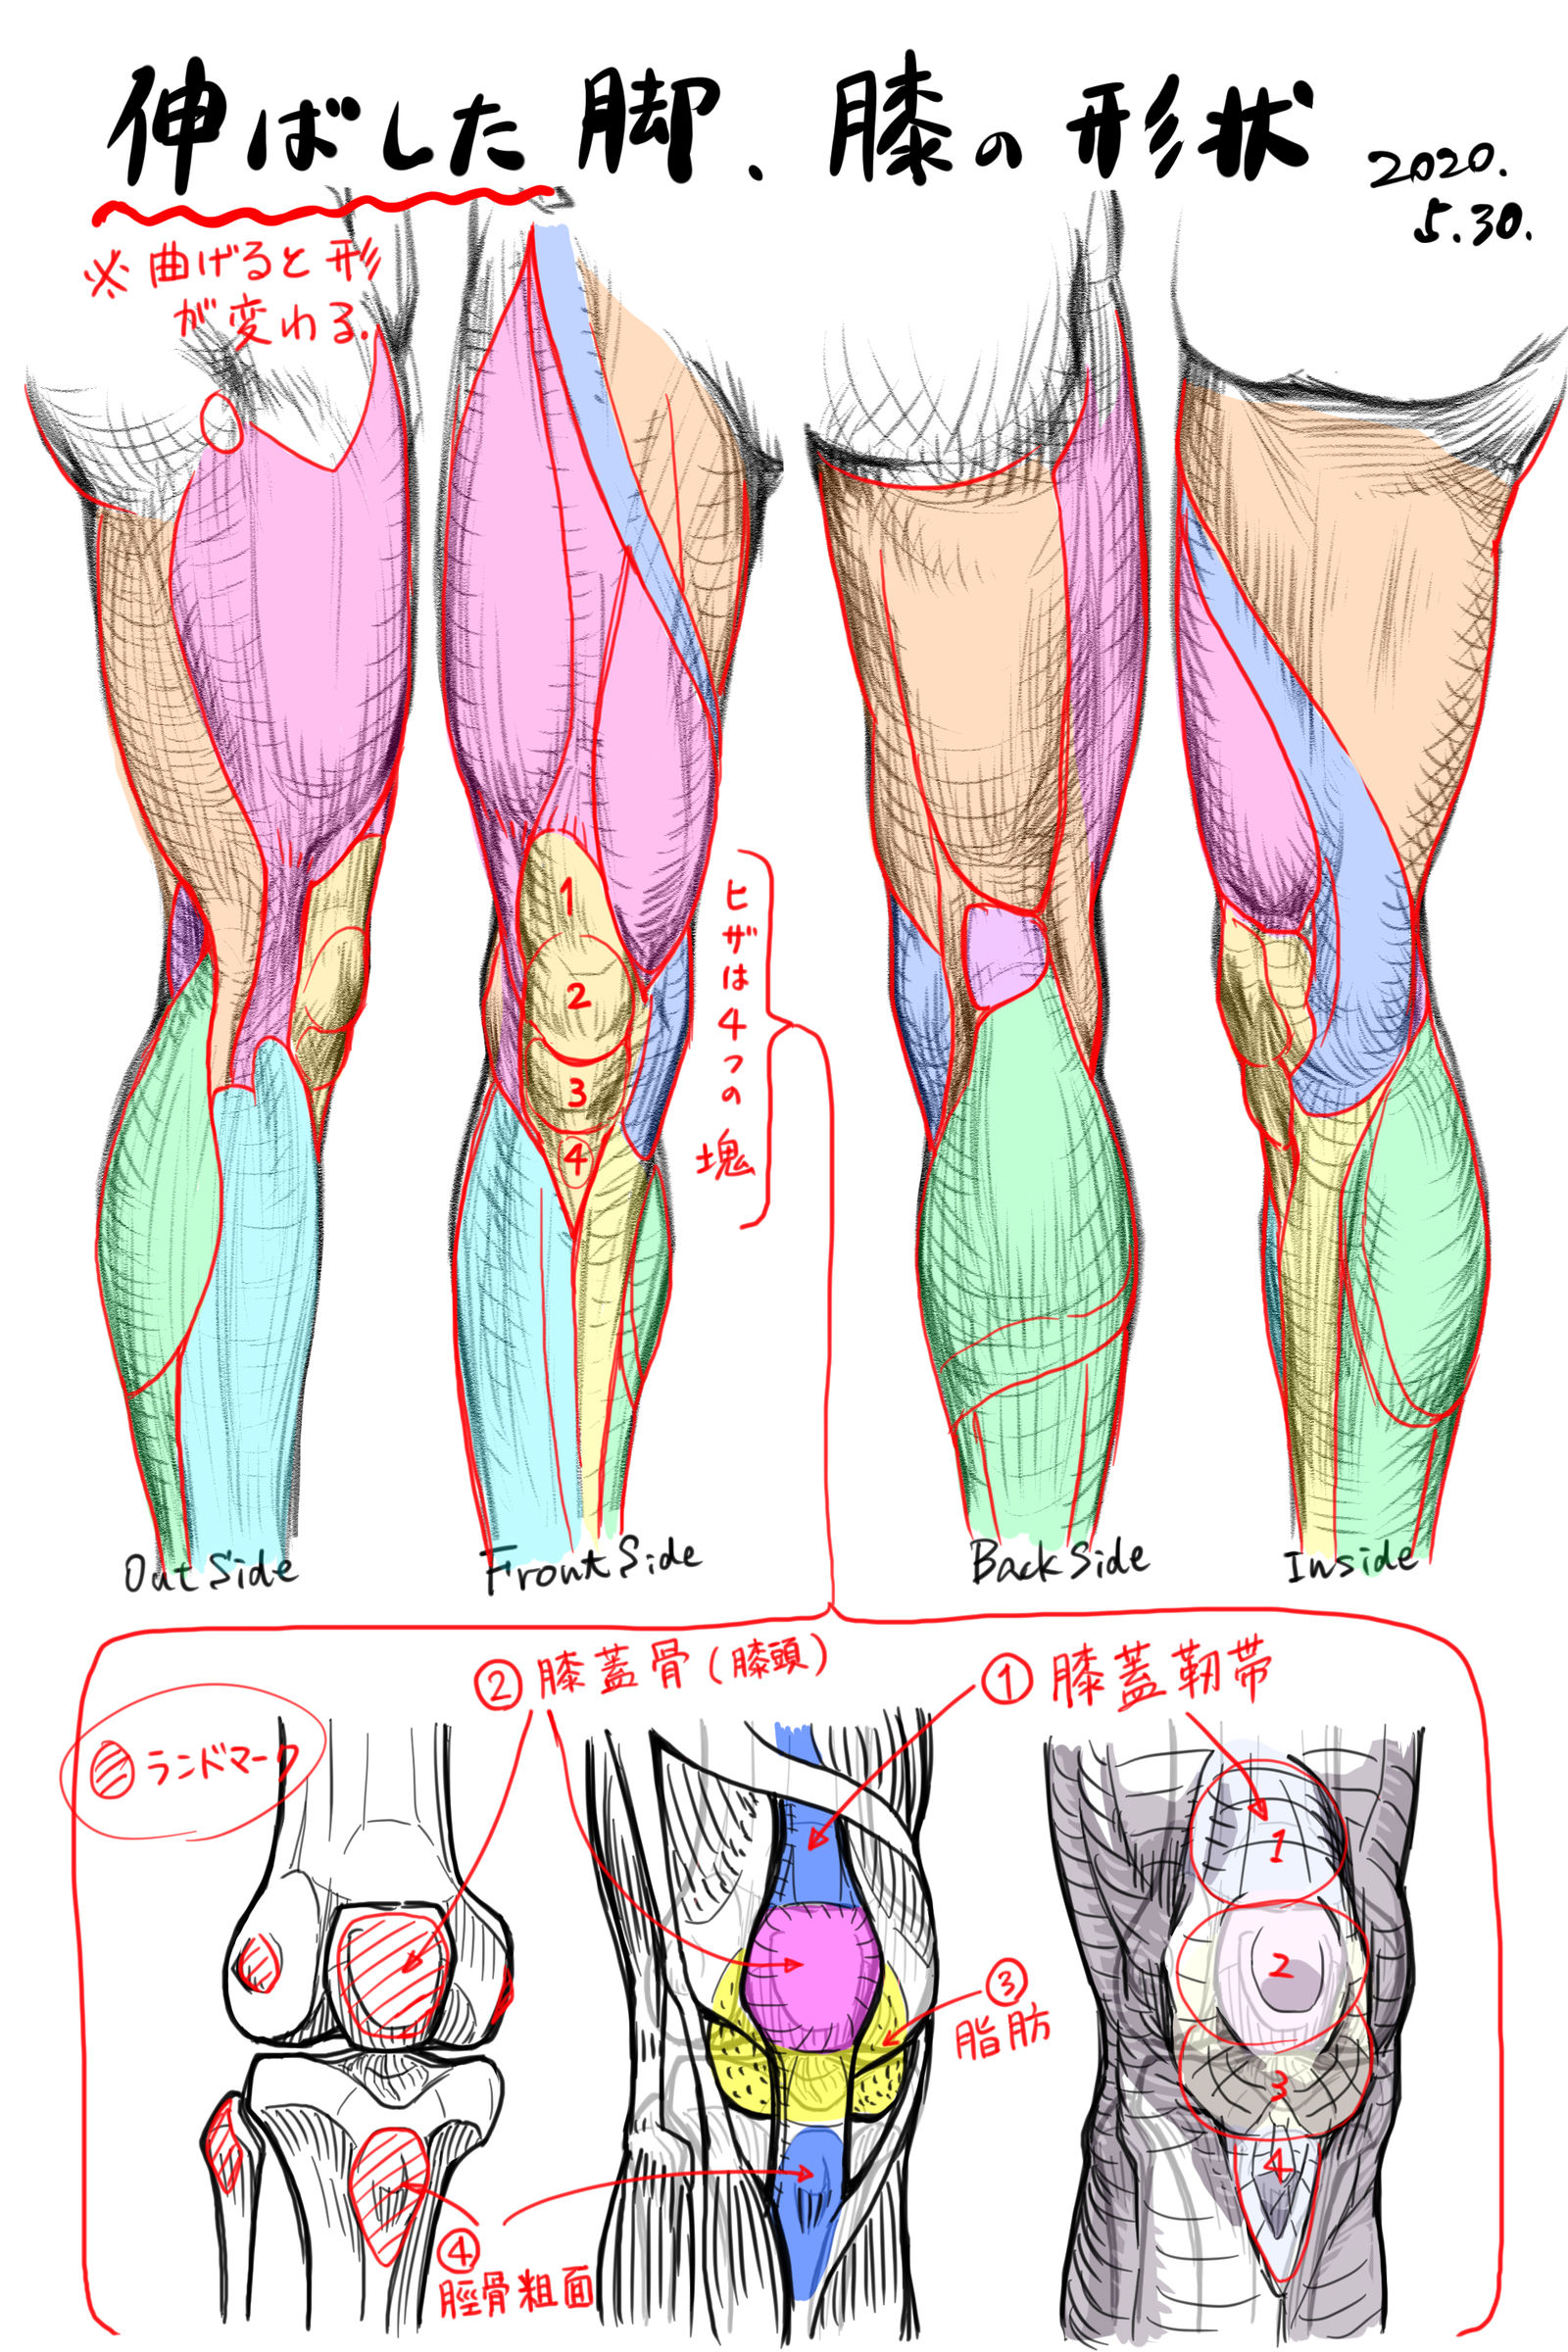 伸直的腿的形状、膝盖的形状